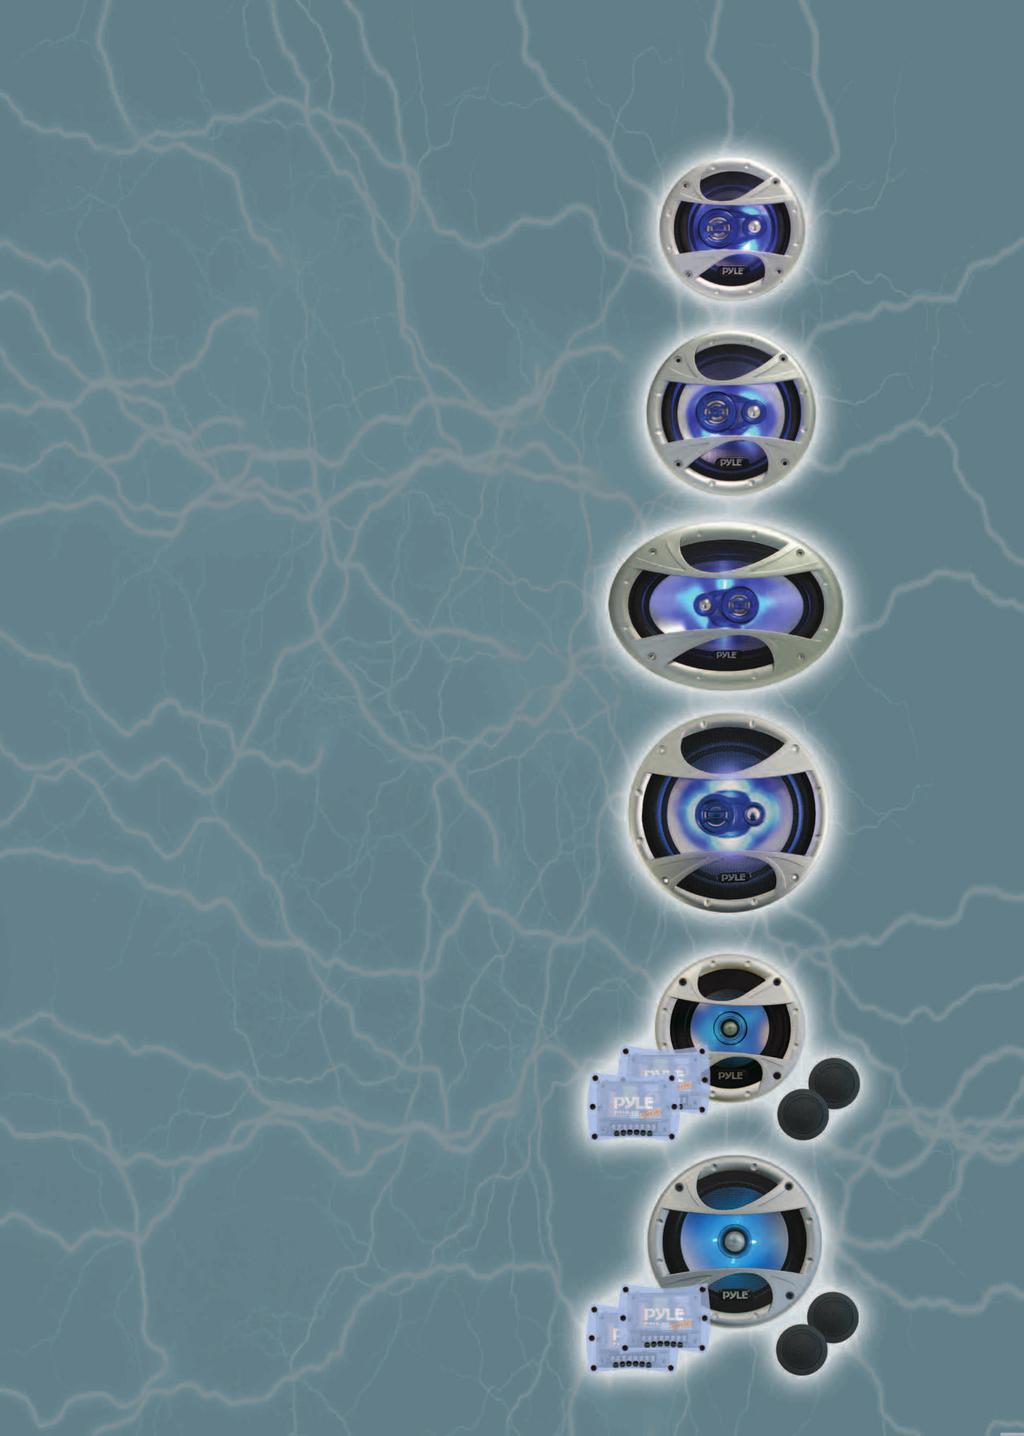 DRIVER PDI SPEAKERS PDI53 3Wege Triax 13cm, 75/150 Watt, 4 Ohm NeodymDomeTweeter, 80 Hz 20 khz blaue LEDBeleuchtung, Magnetschutz, Einbautiefe 57 mm, Einbauöffnung 115 mm UVP/EUR 89, PDI63 3Wege